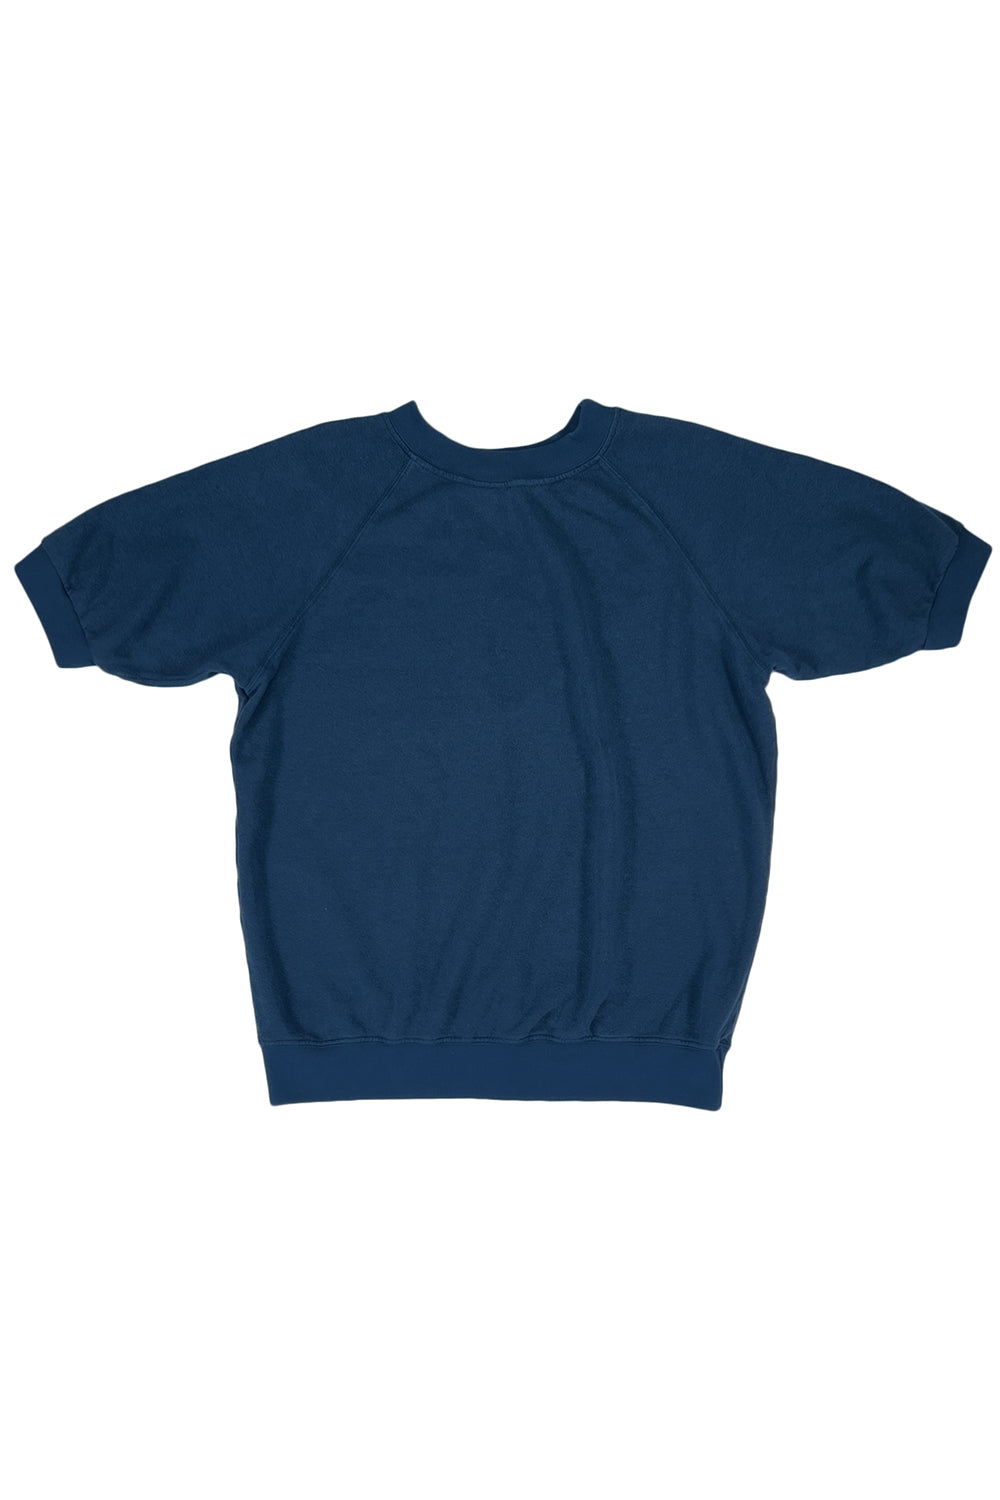 Short Sleeve Raglan Fleece Sweatshirt | Jungmaven Hemp Clothing & Accessories / Color: Navy